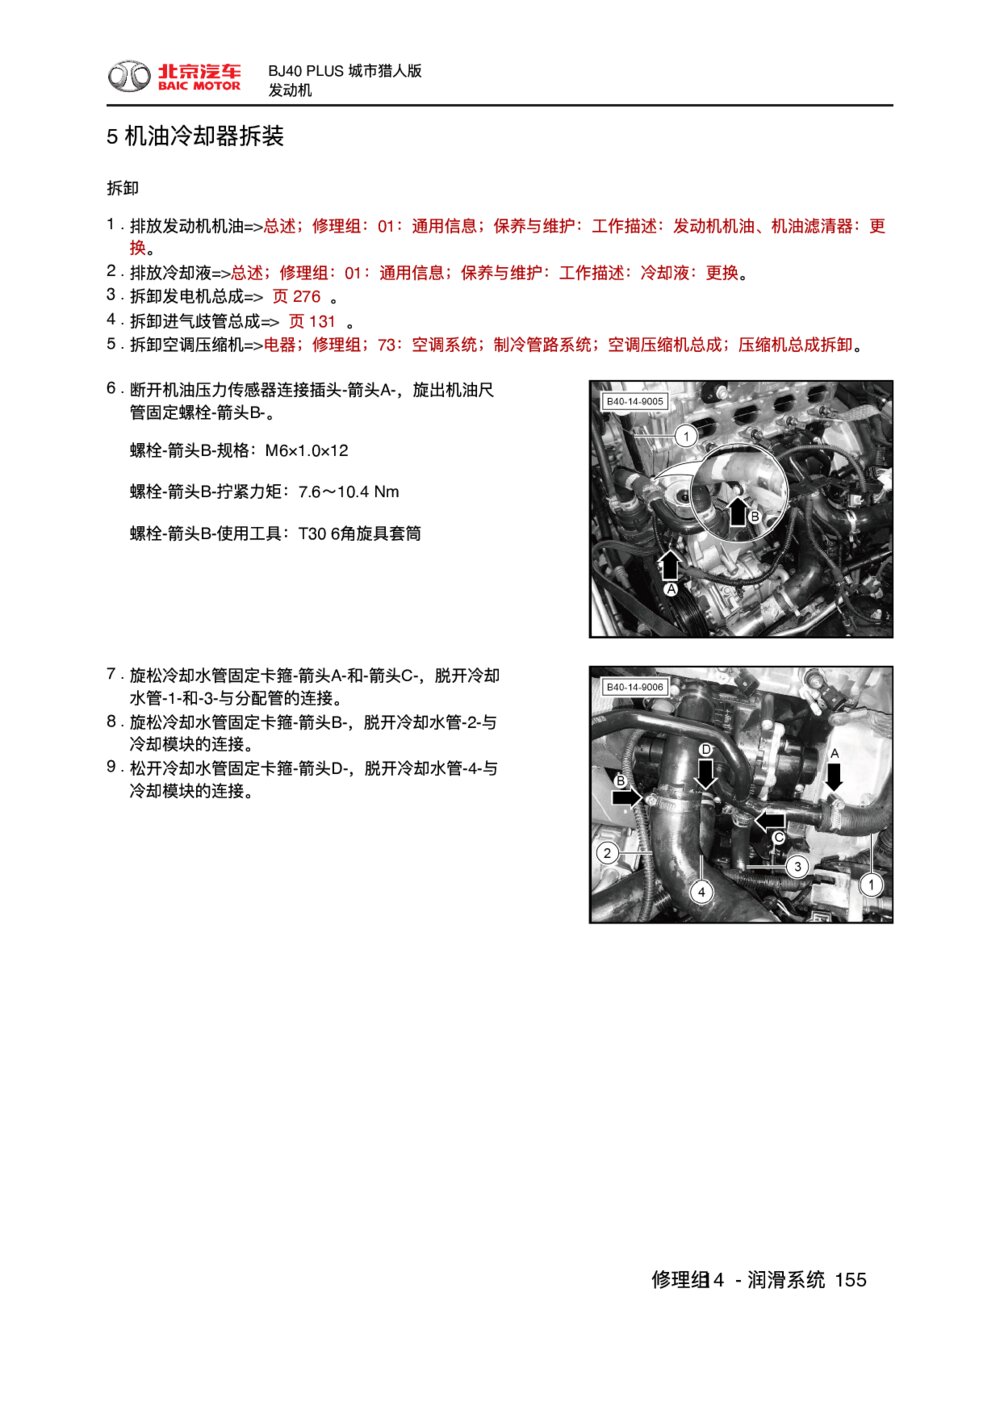 2018款北京BJ40 PLUS发动机机油冷却器拆装1